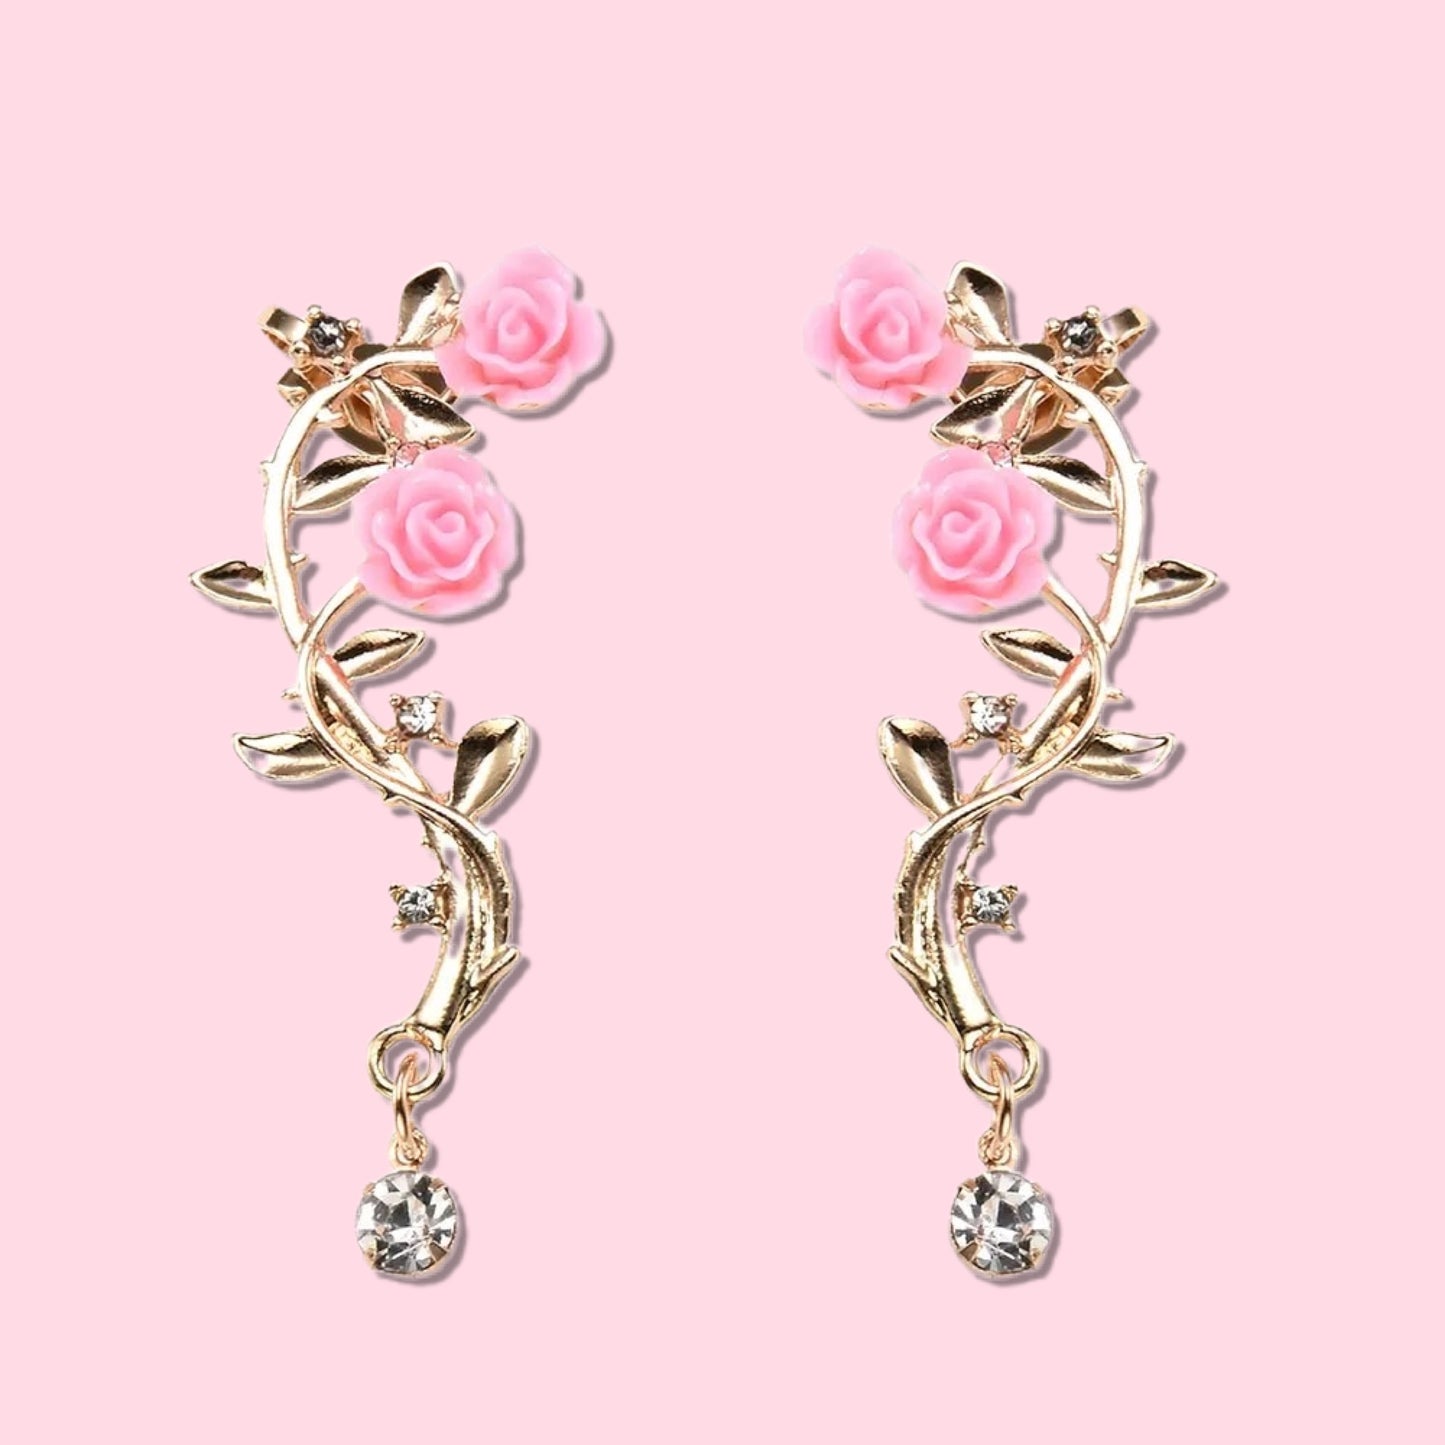 Darling Rose Earrings